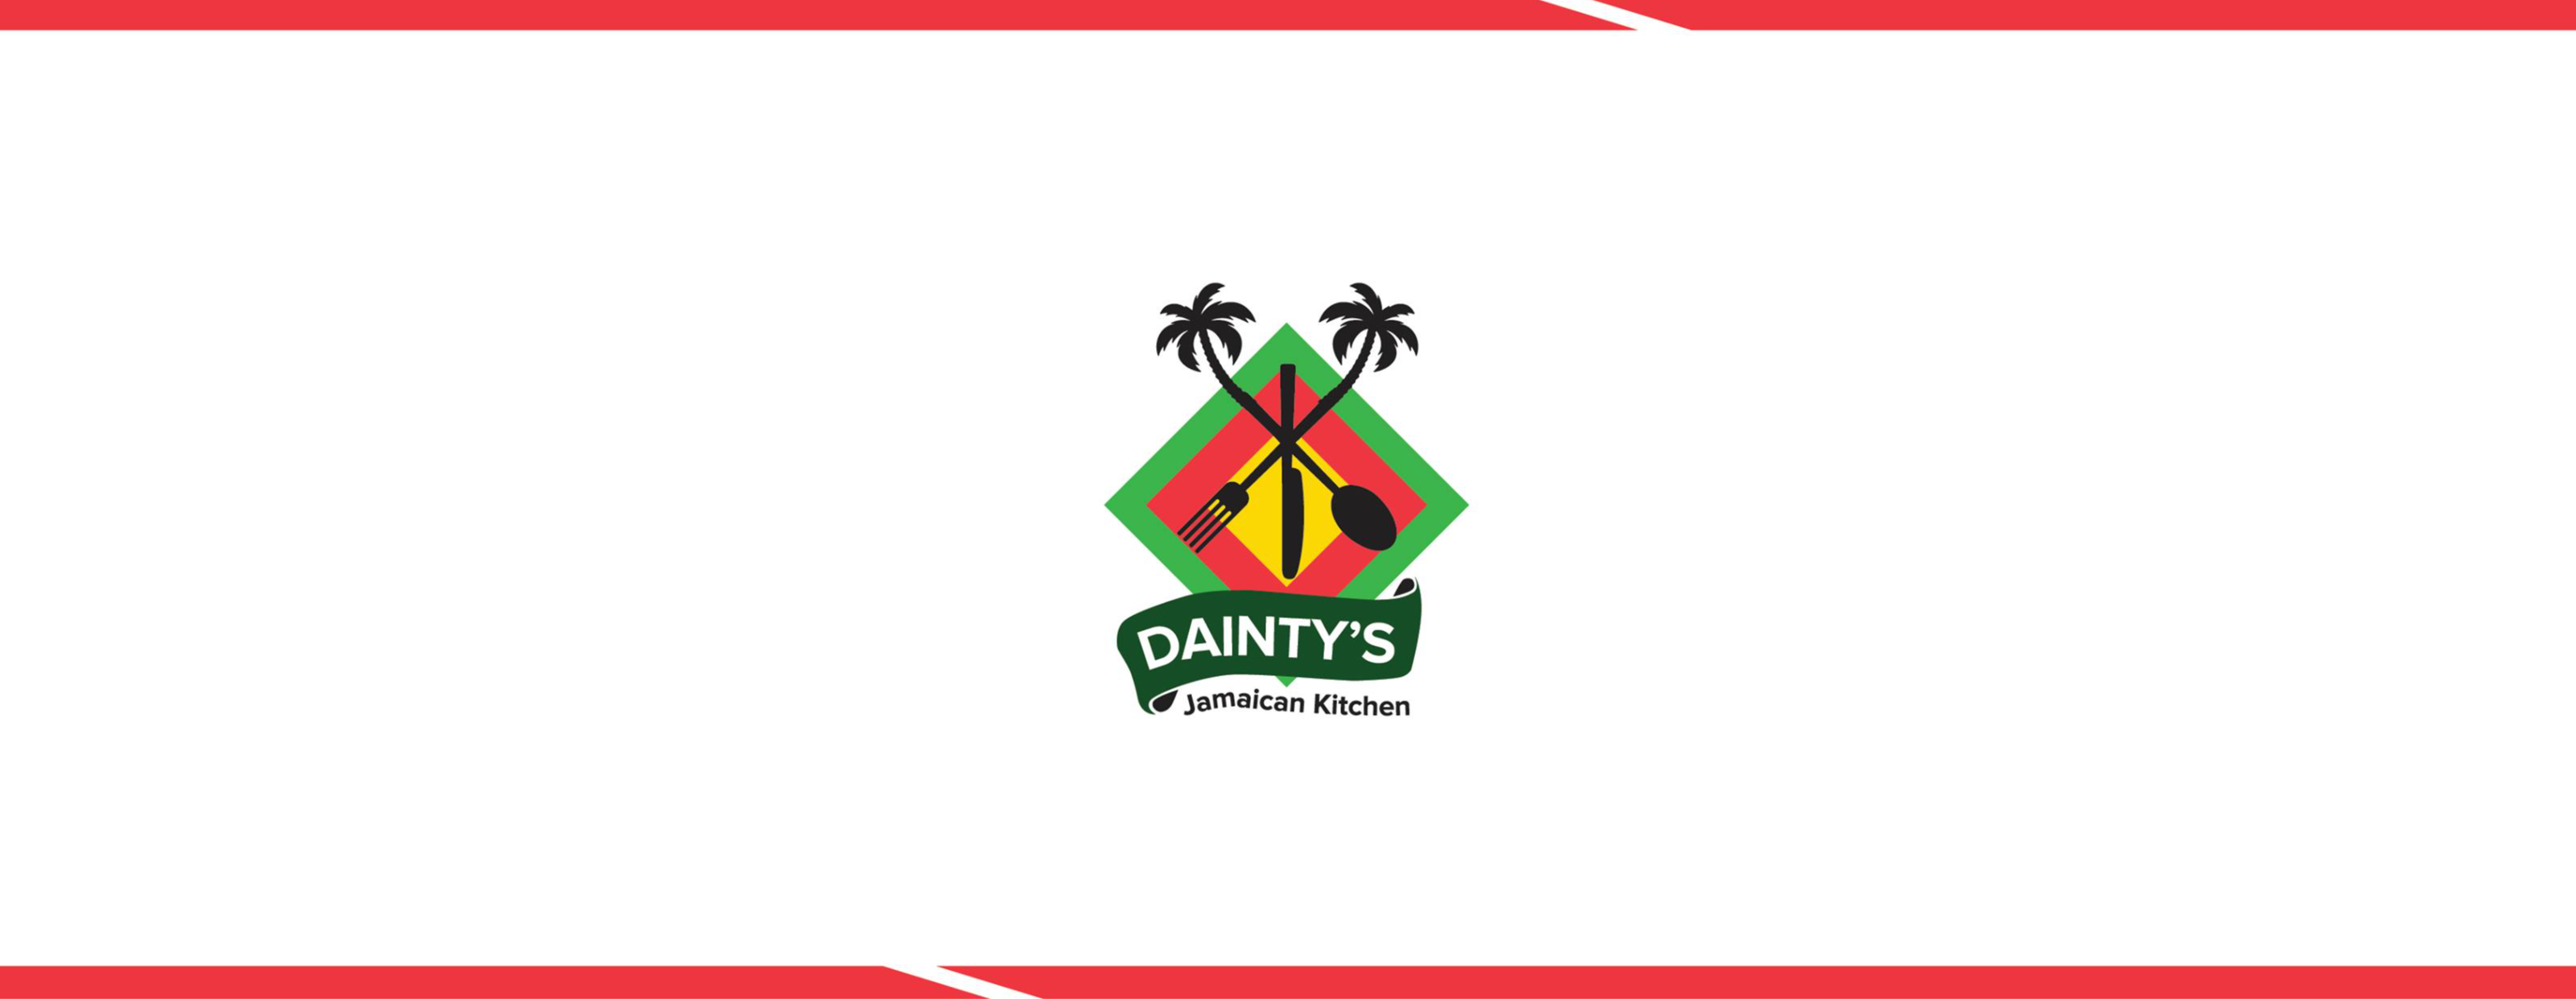 Dainty's Jamaican Kitchen